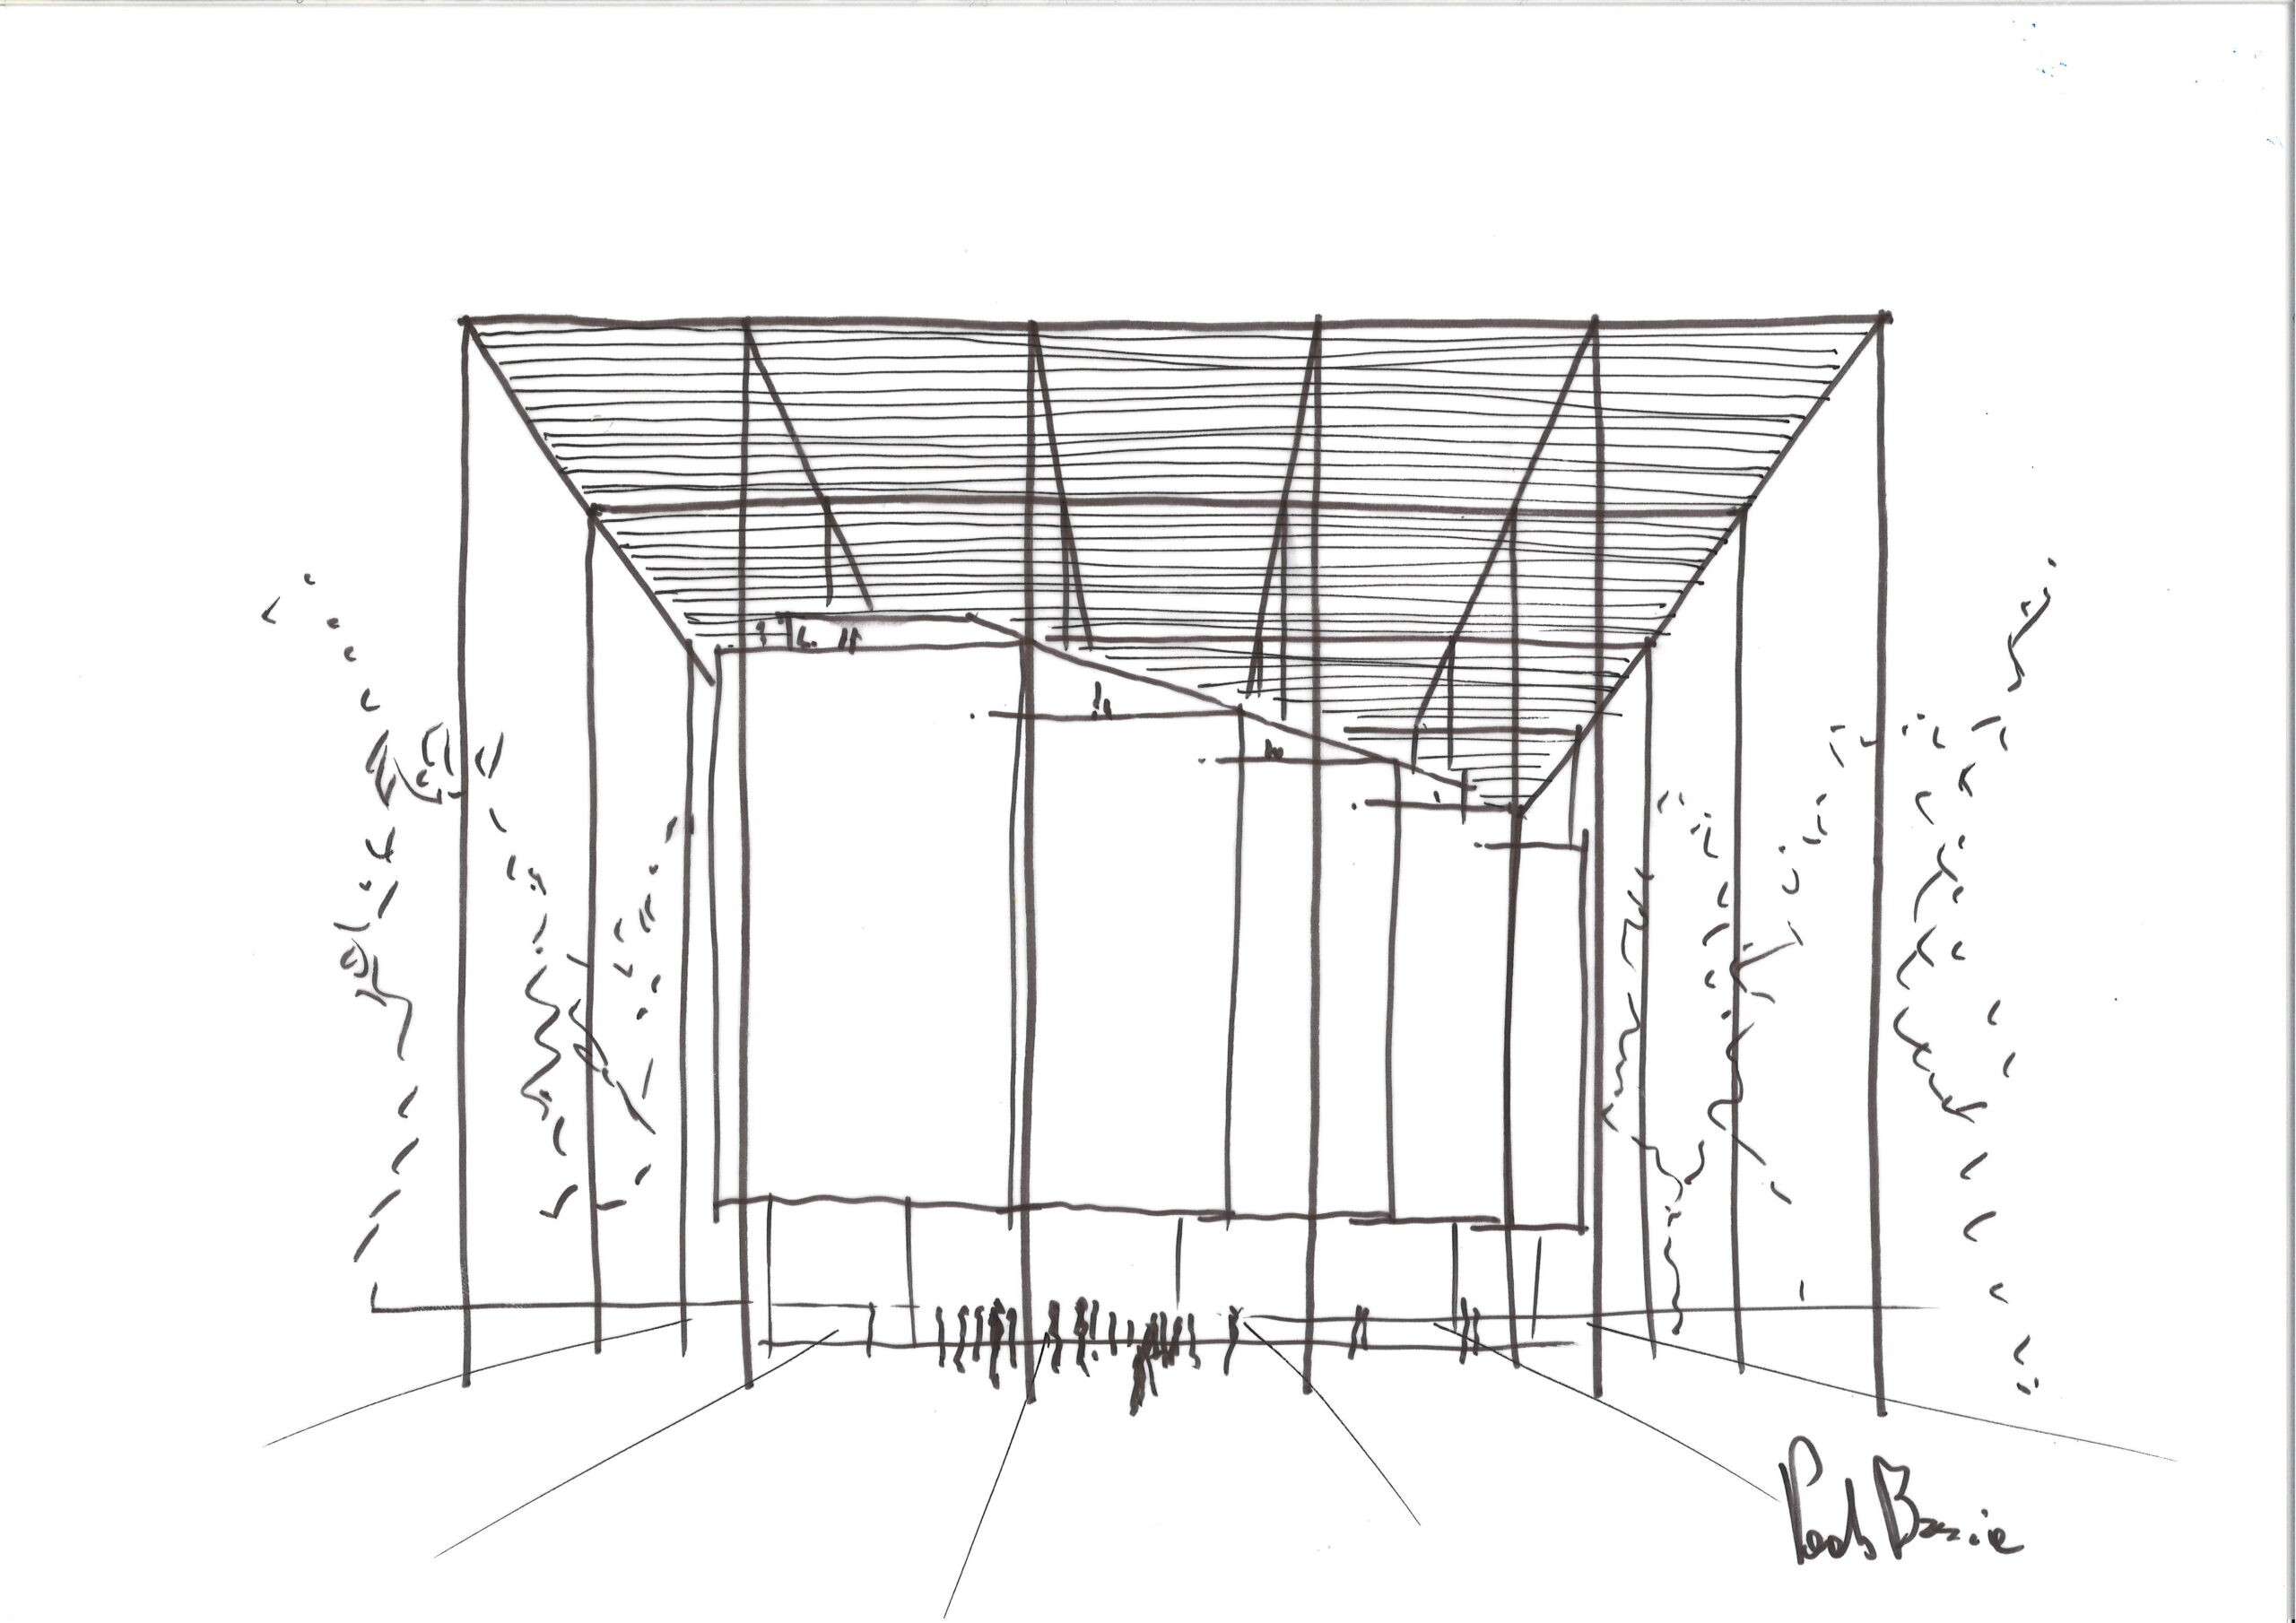 OBR, Casa BFF Sketch, Paolo Brescia, 2023